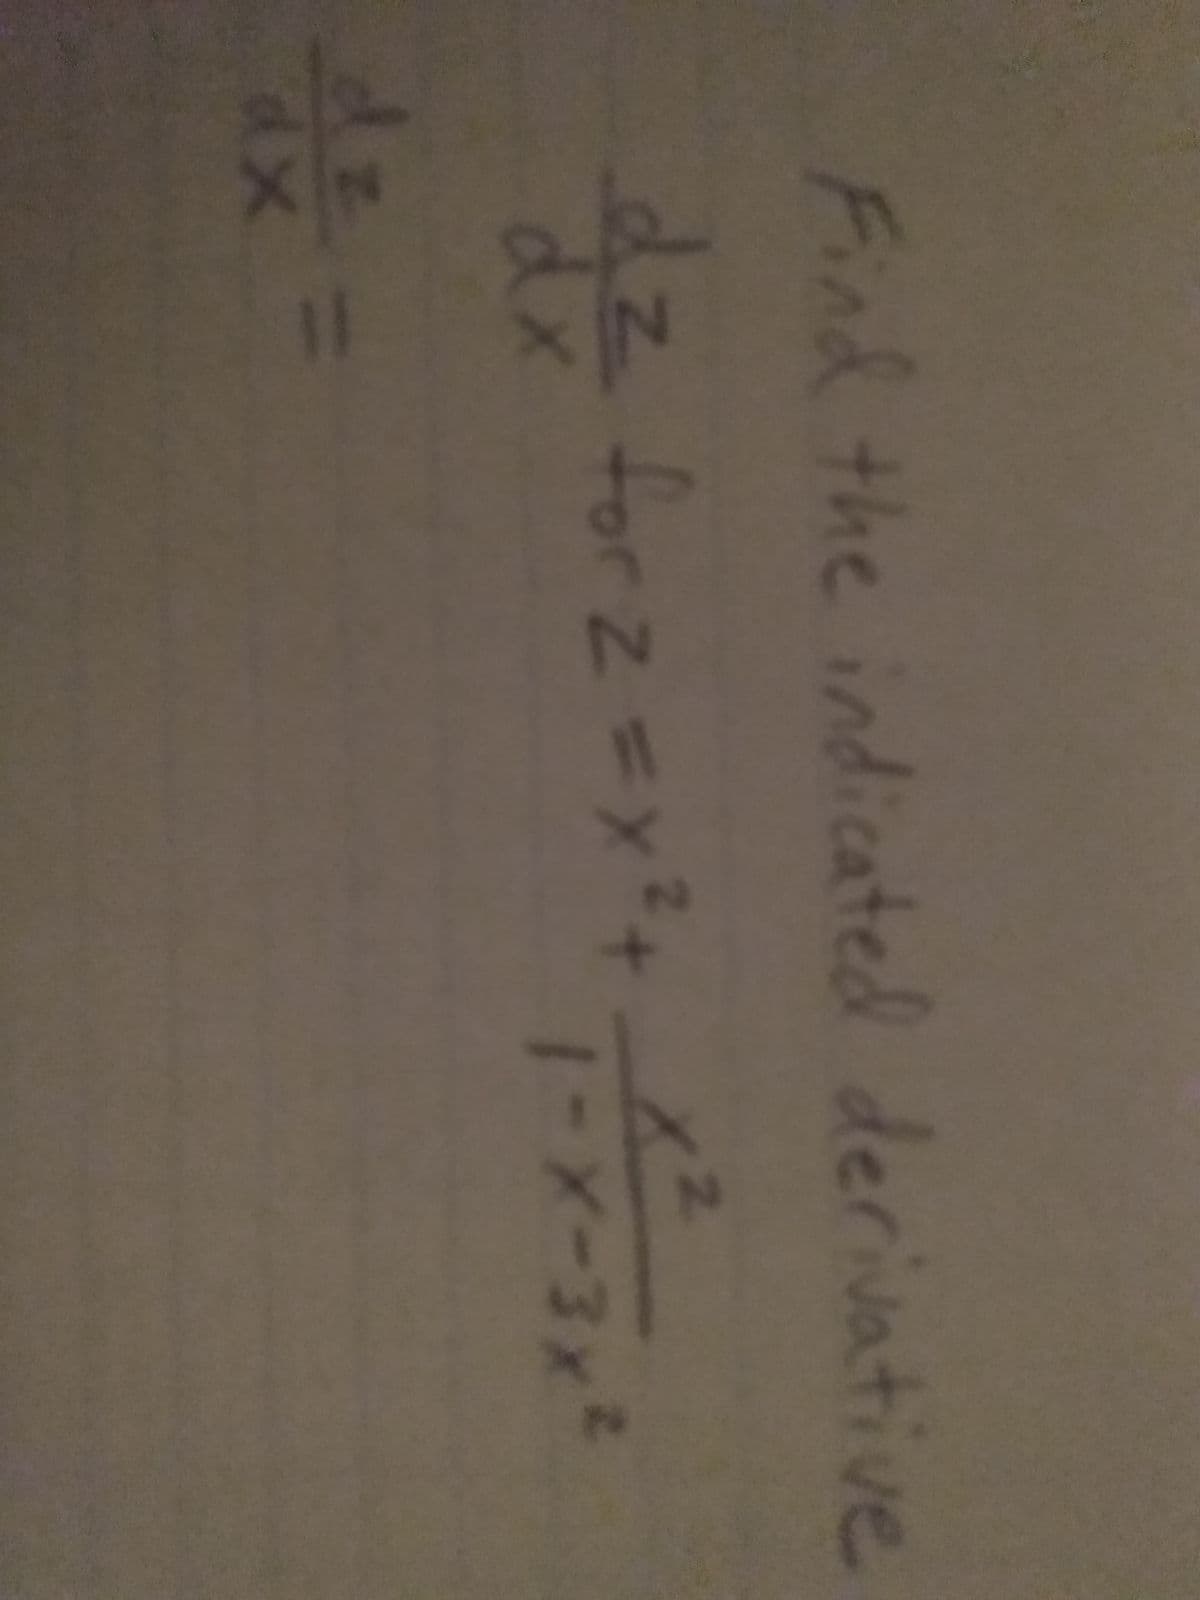 2'
Find the indicated derivative
dz forz=x?+
dx
2.
1-X-3x²
dz-
